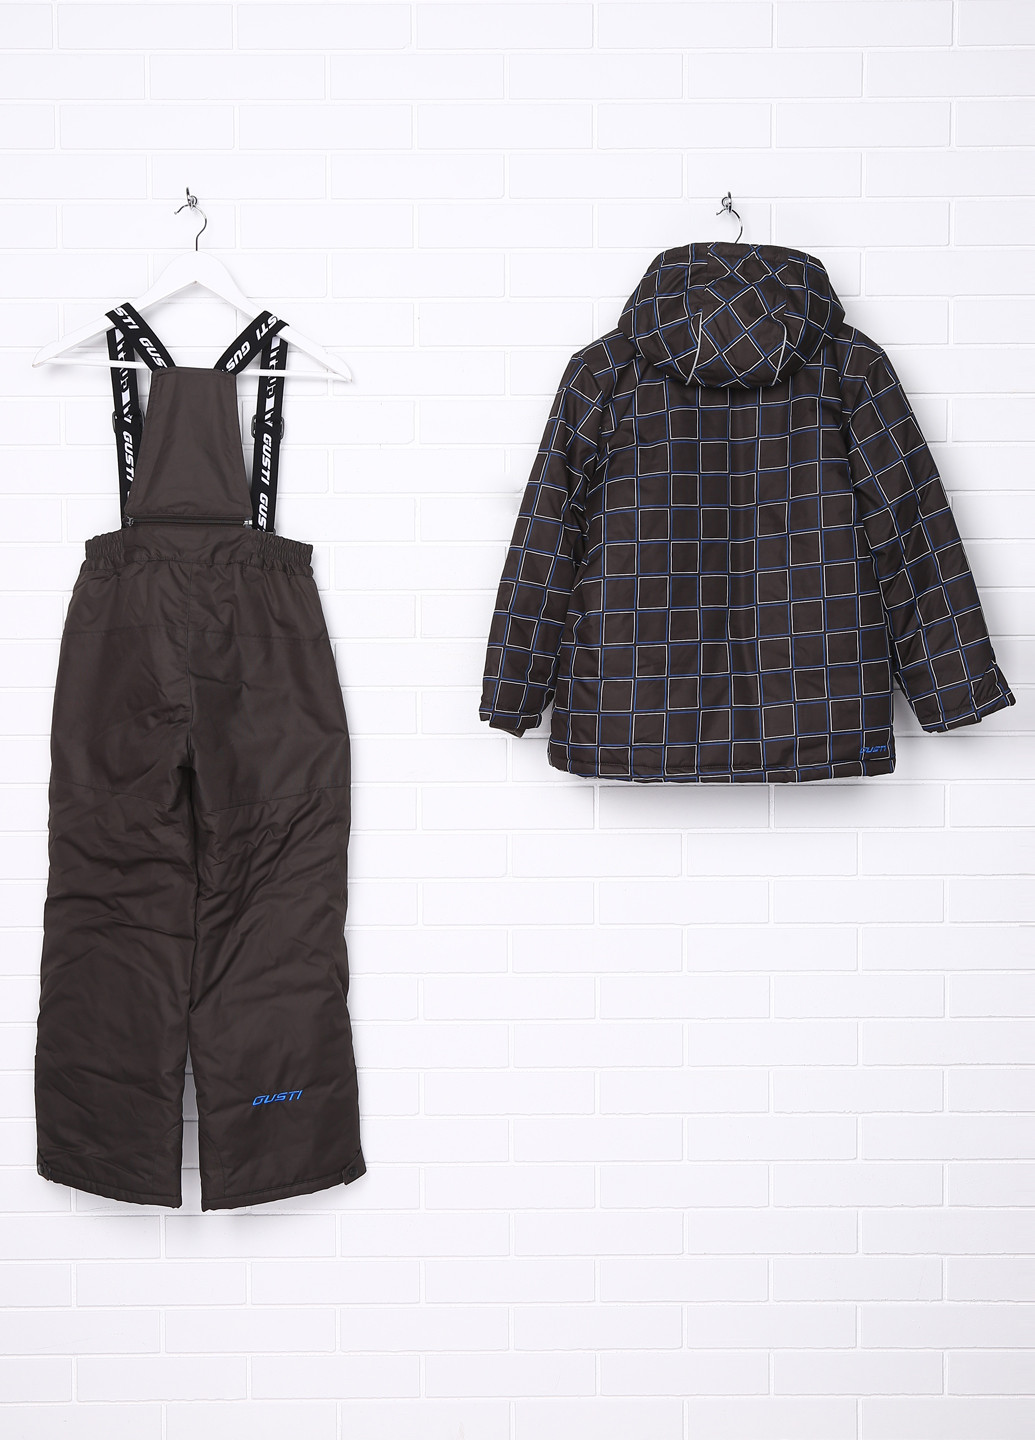 Грифельно-серый зимний комплект (куртка, полукомбинезон) Gusti Boutique